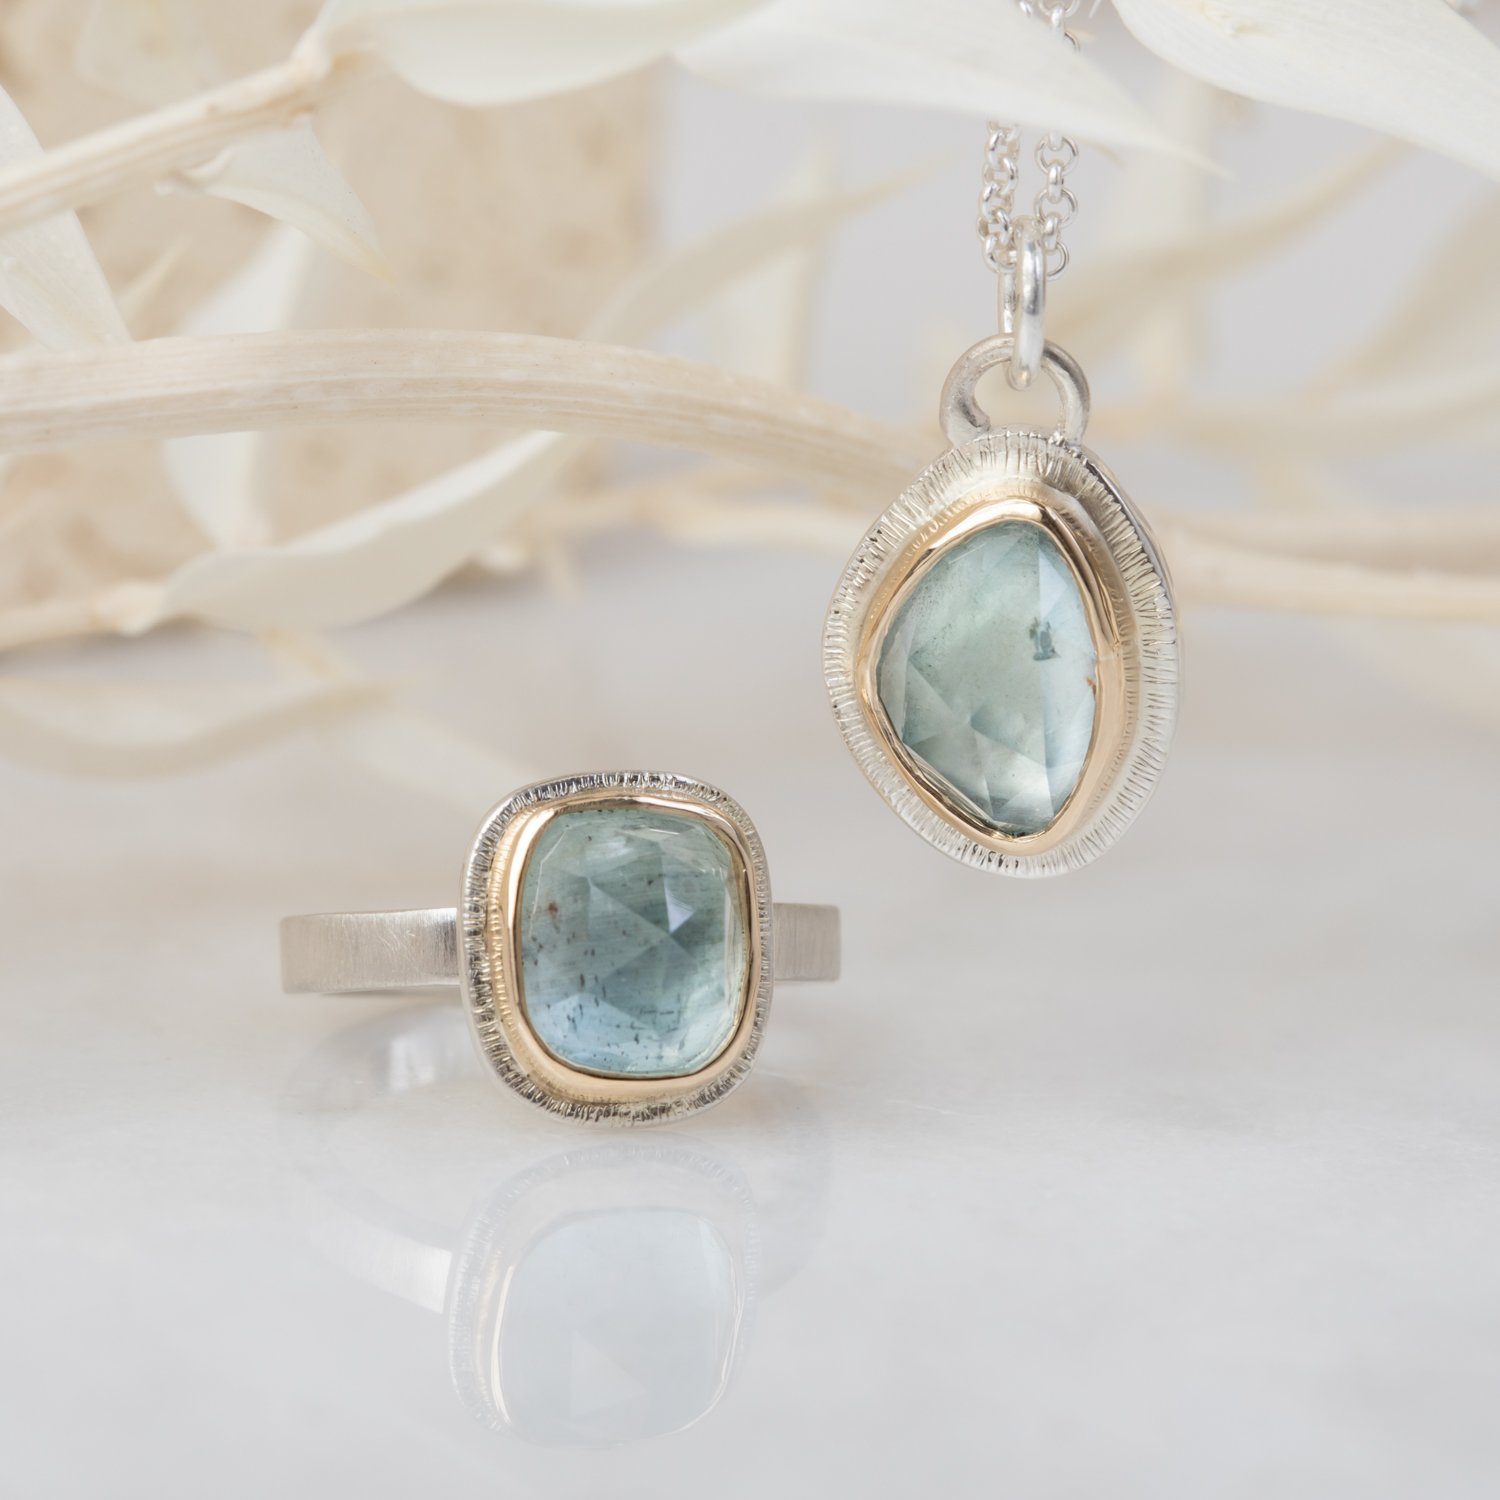 styled-gemstone-rings-and-pendants-14.jpg